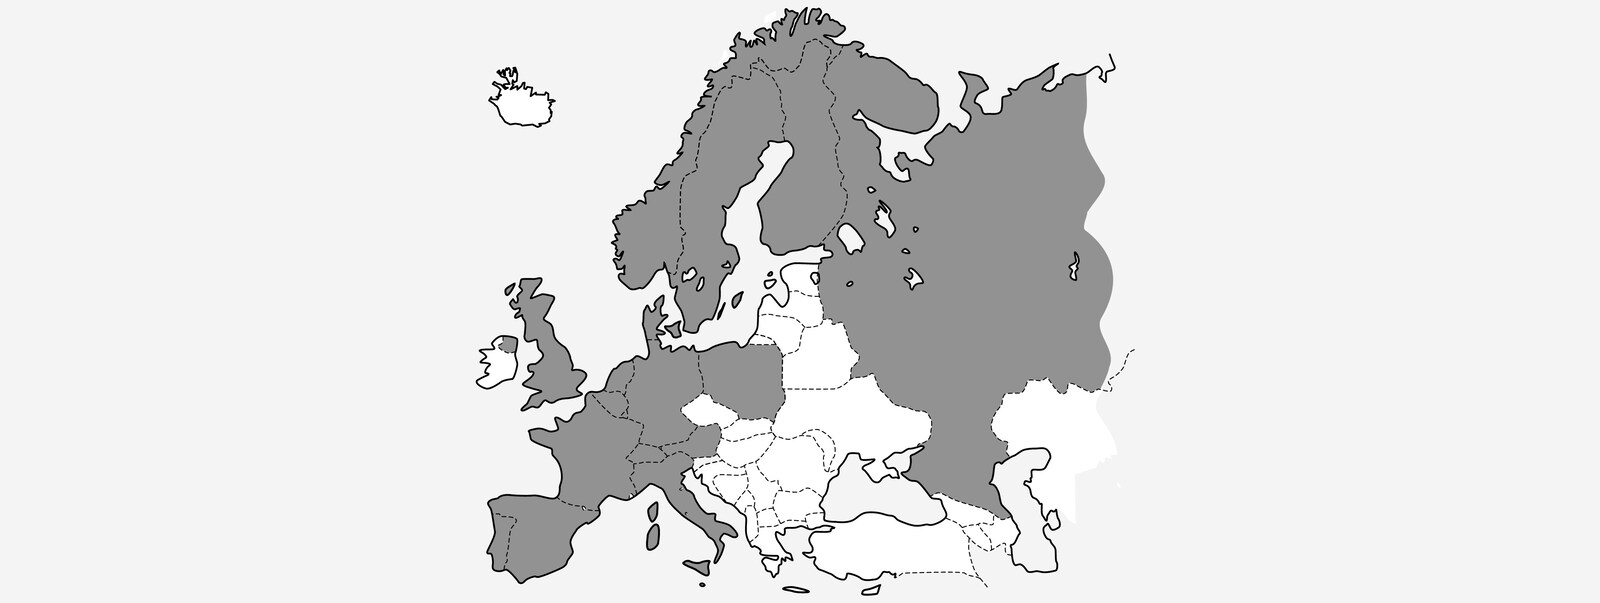 P5-1519-VOC-Map-europe